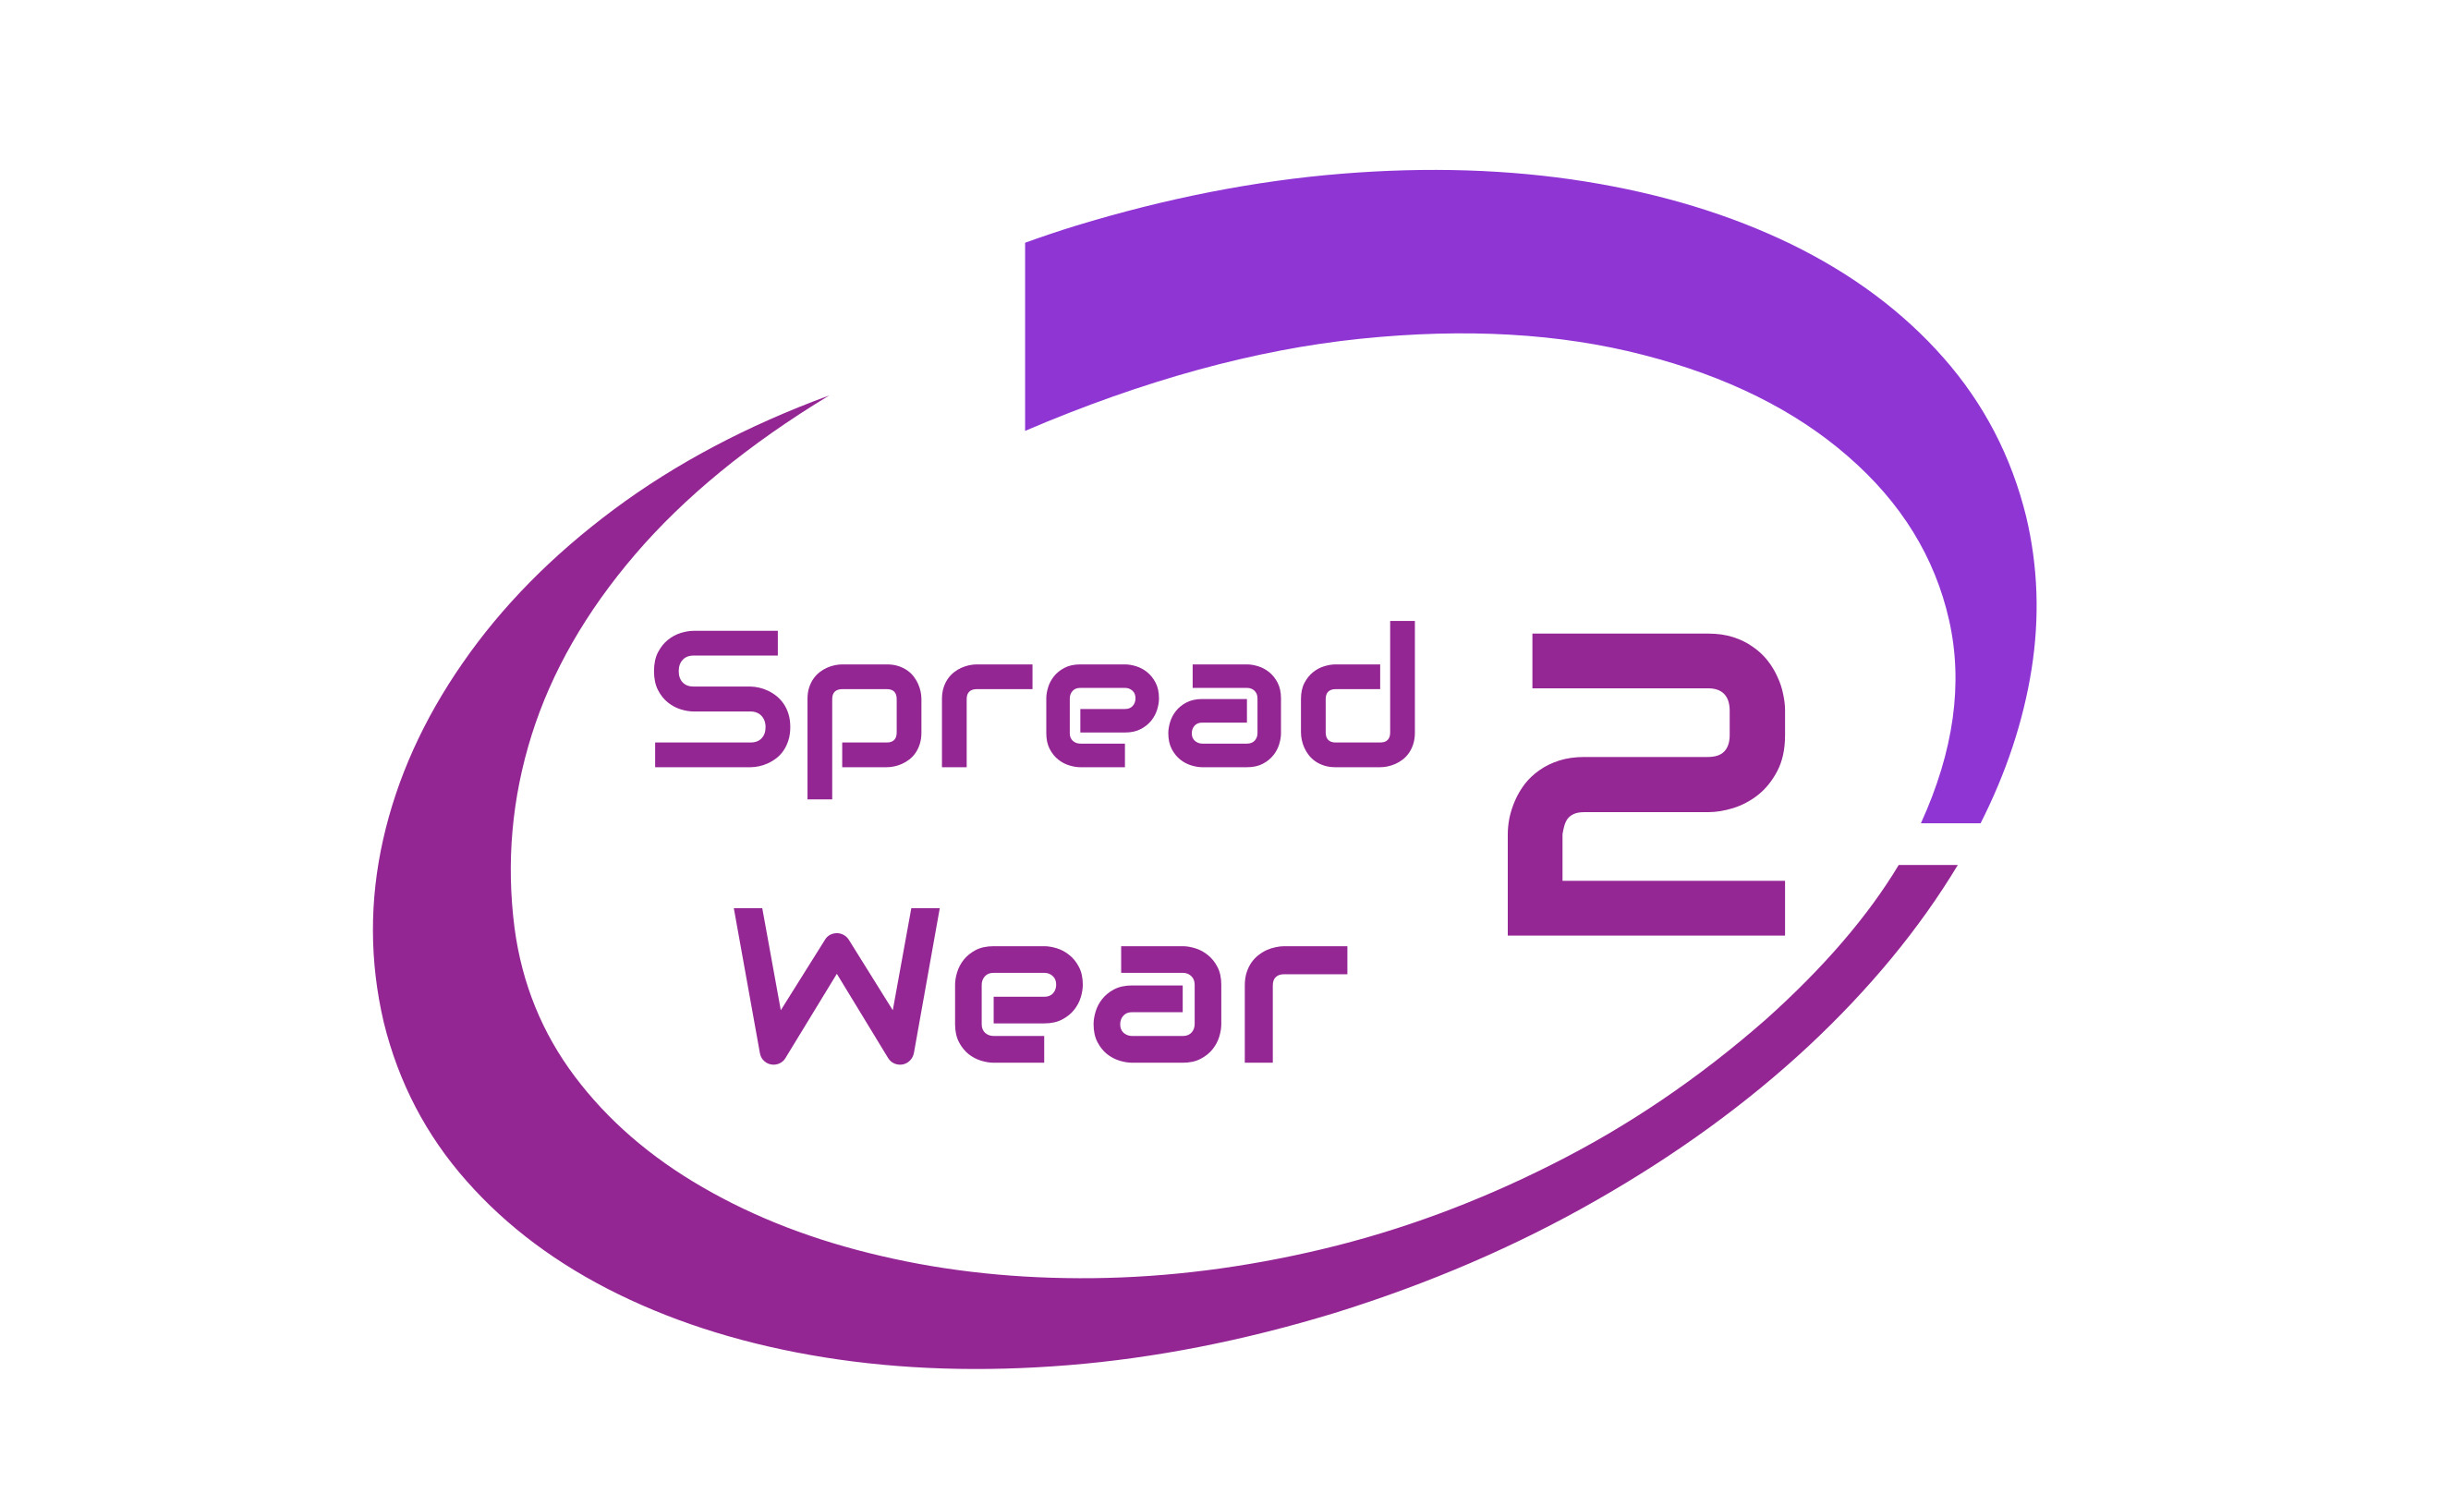 Spread 2 Wear